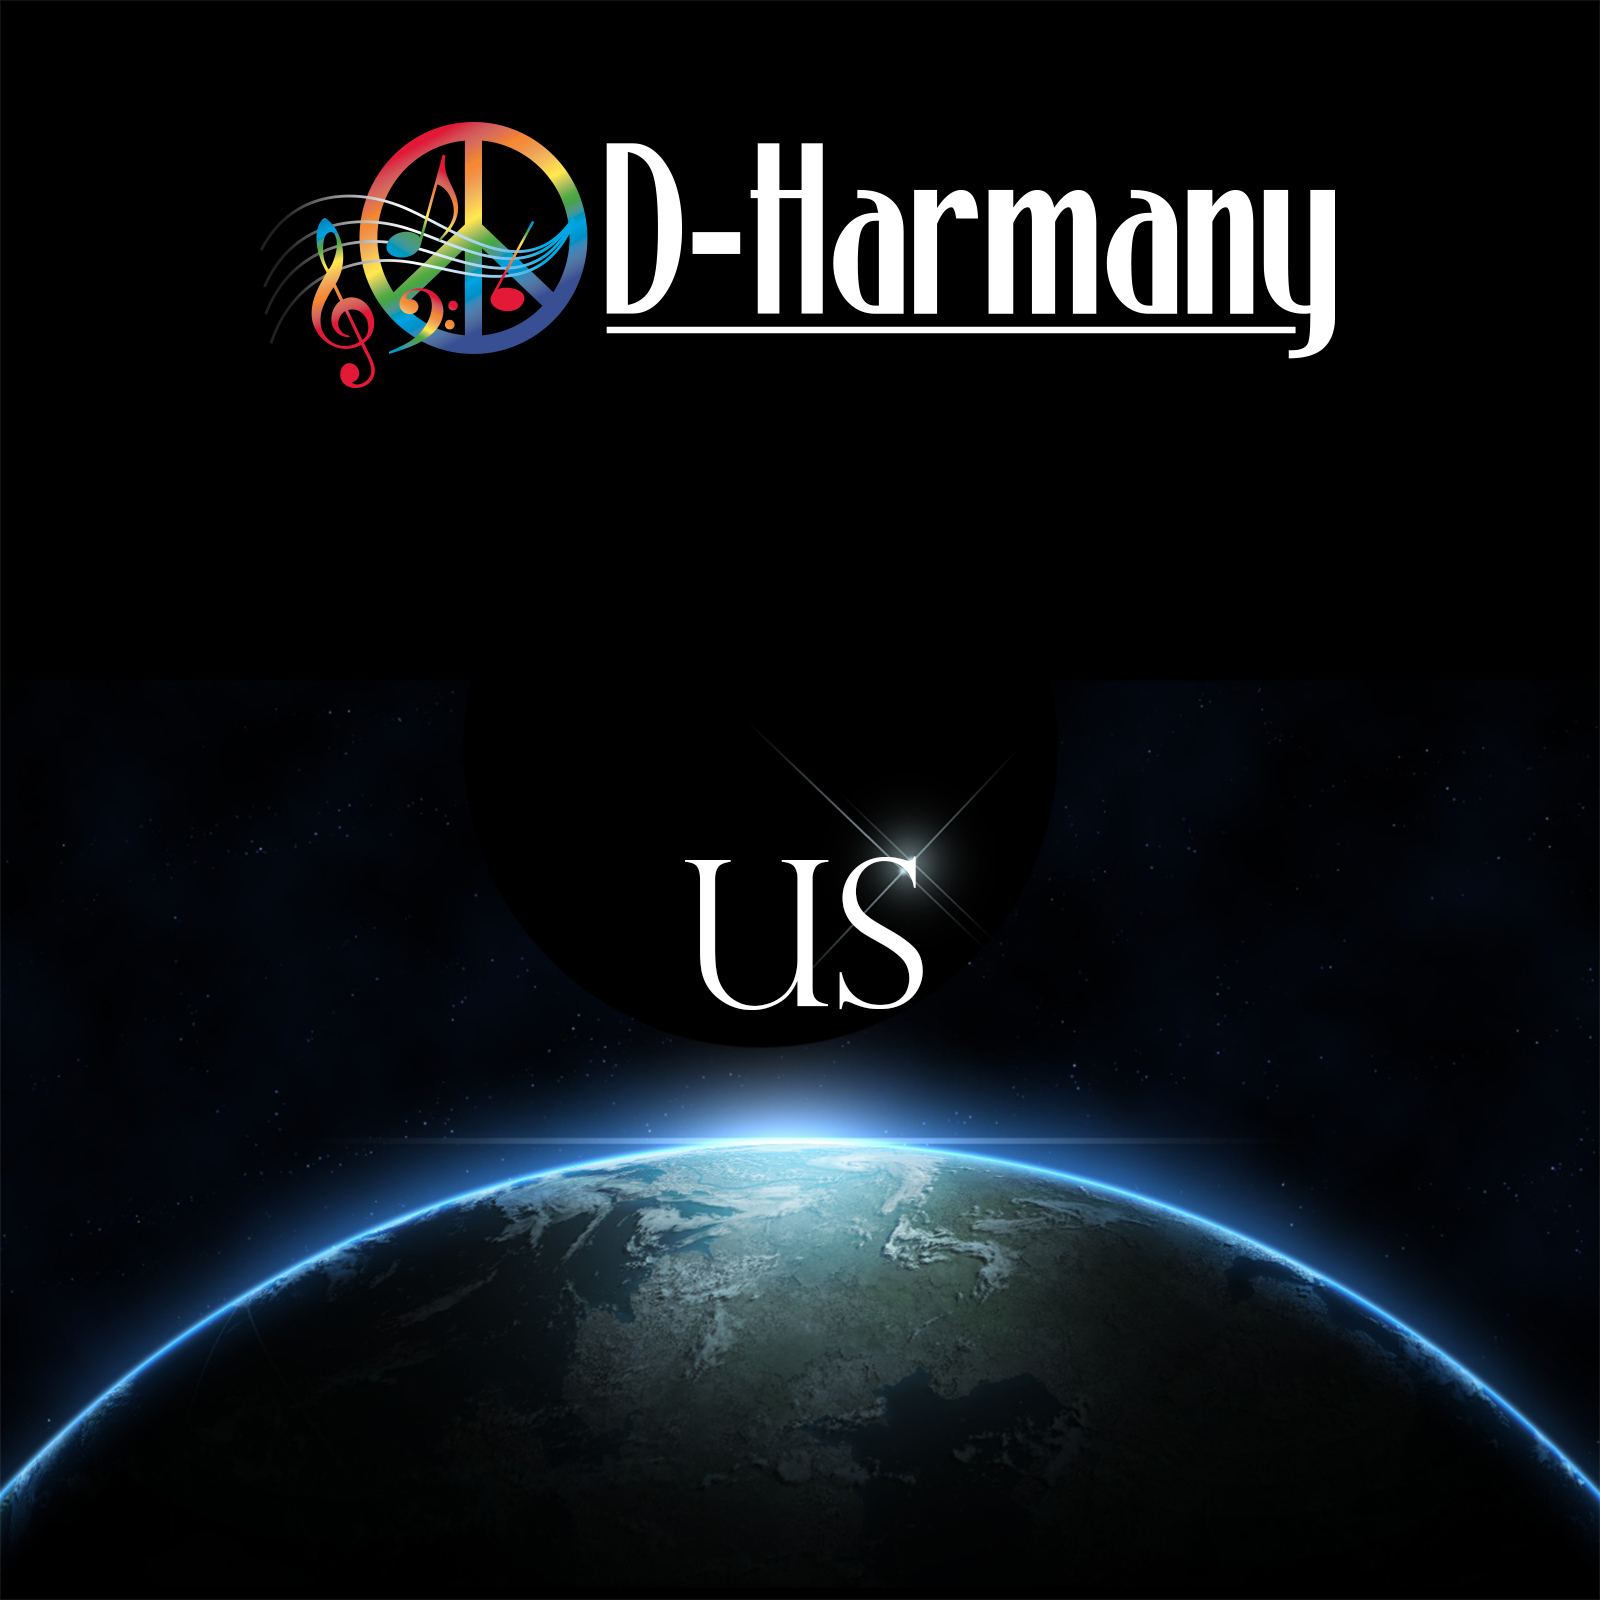  D-Harmany – Us